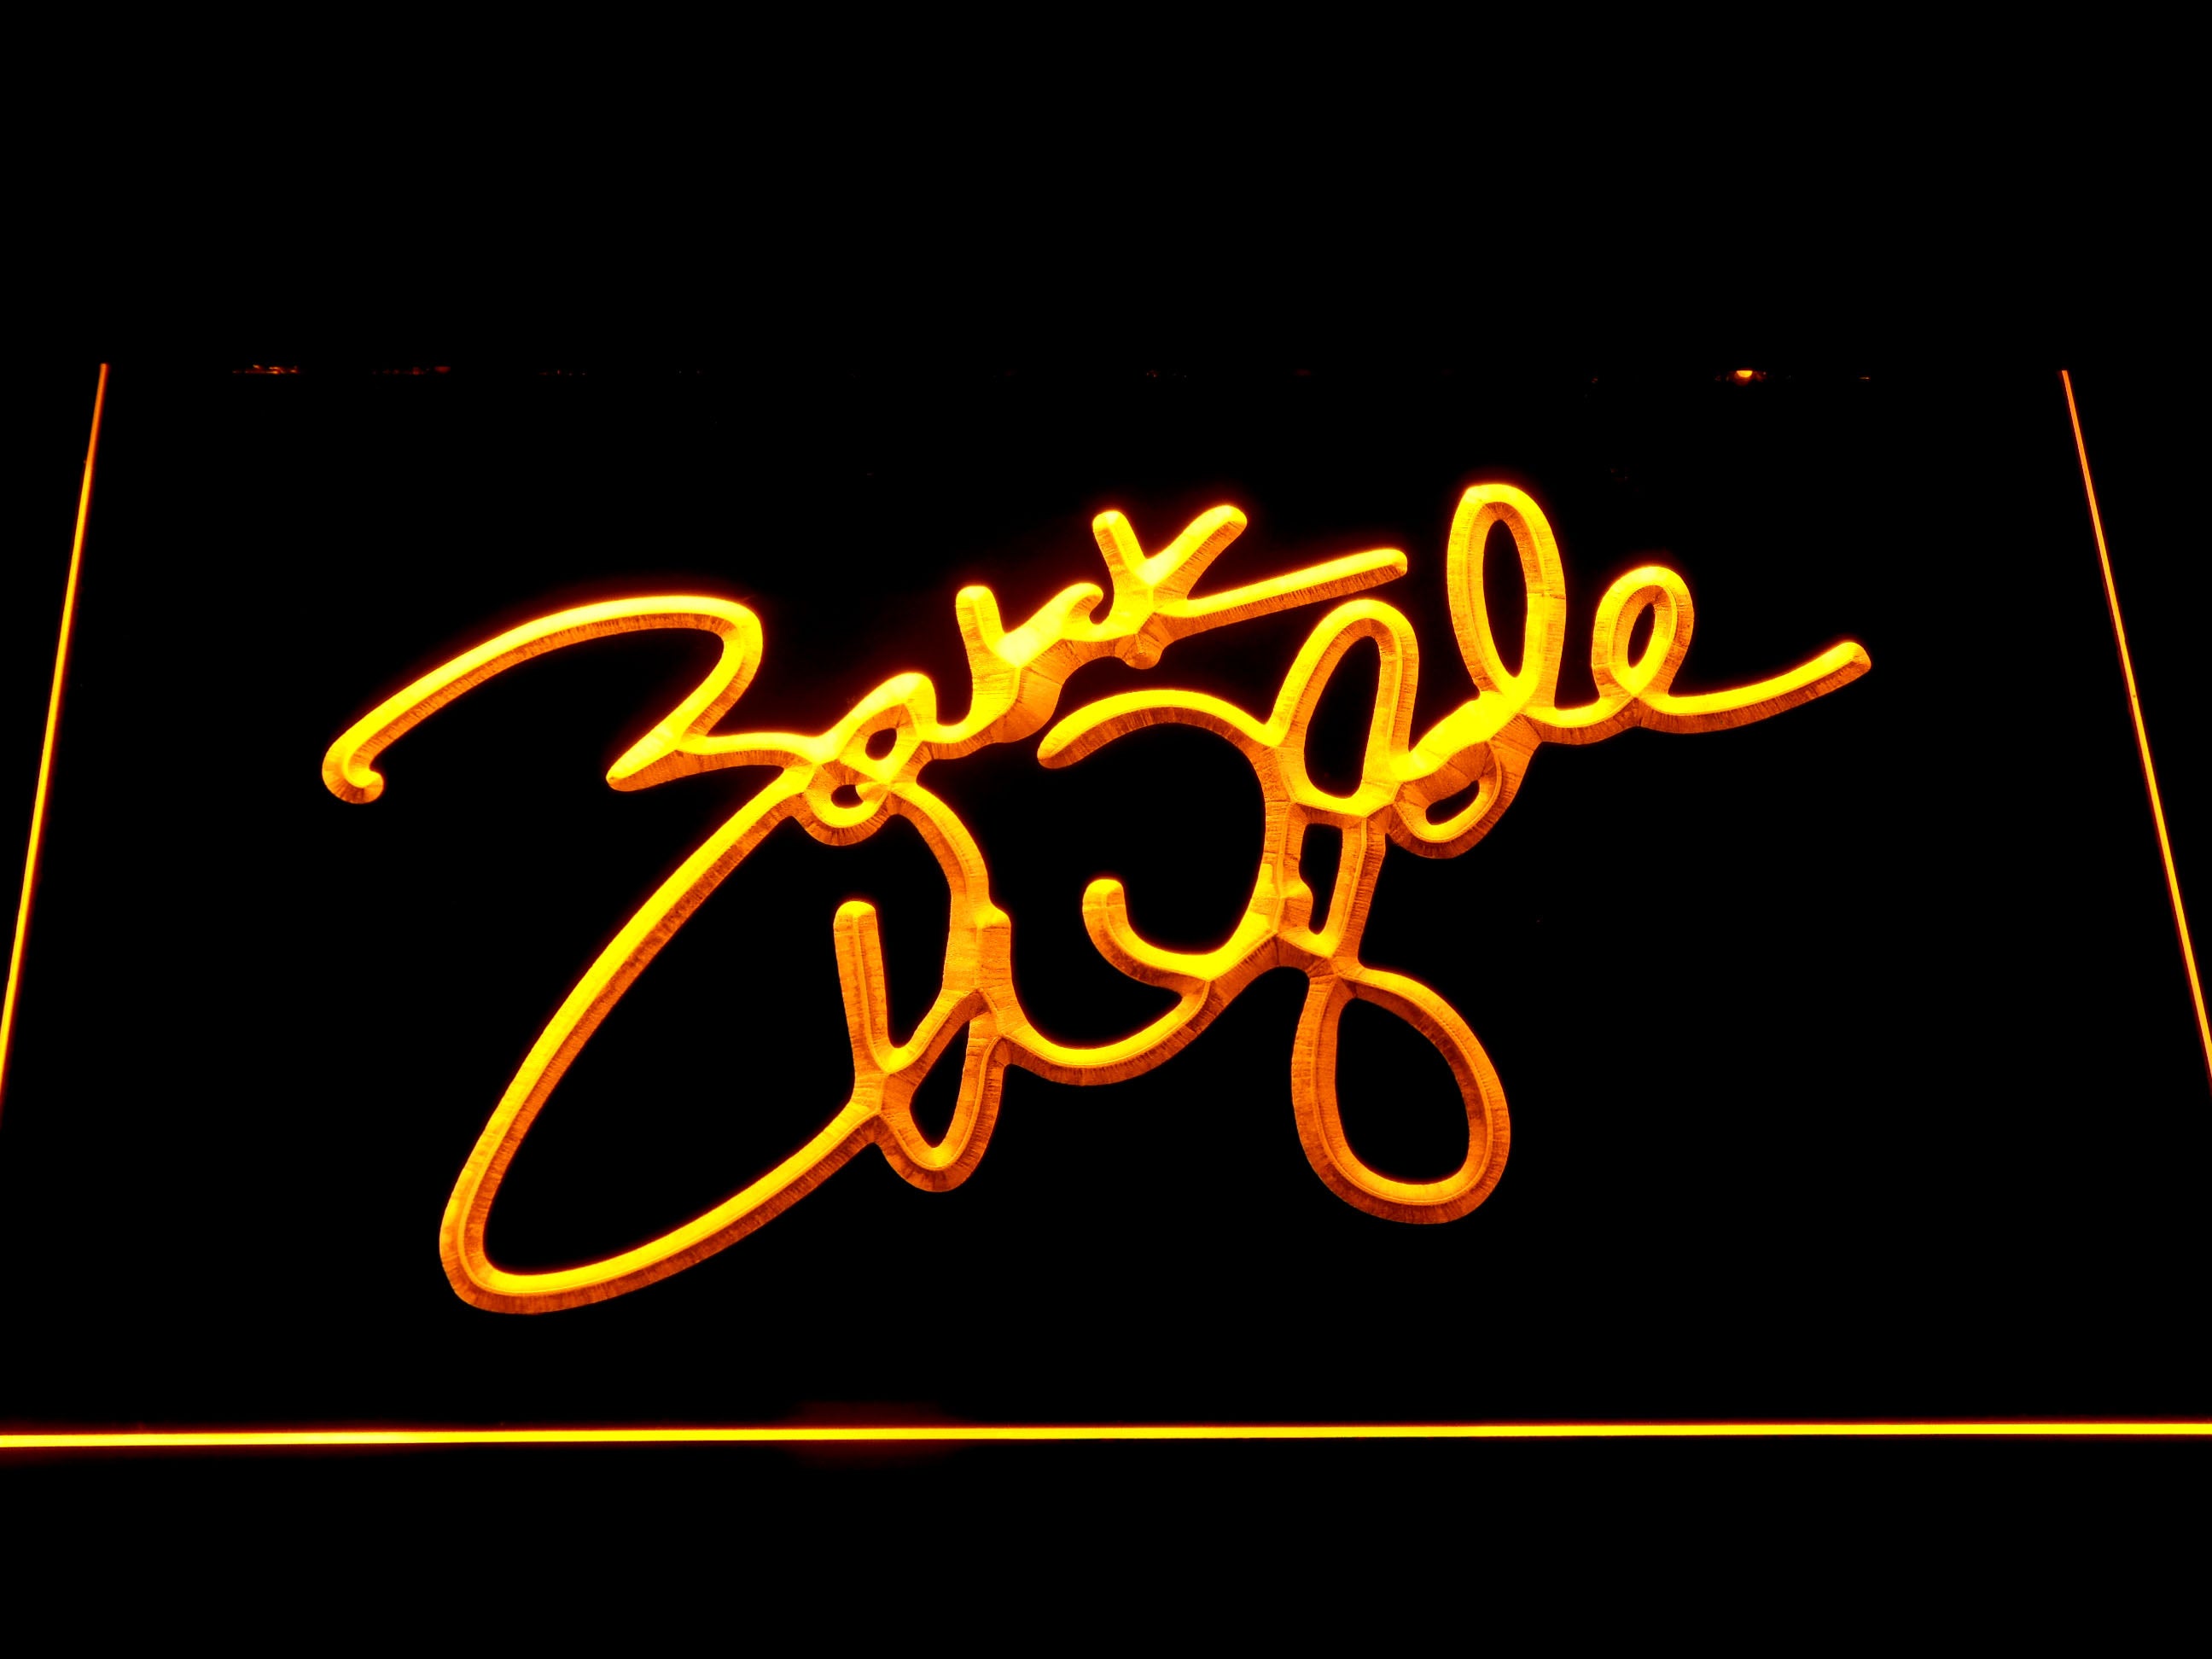 Zakk Wylde Signature LED Neon Sign